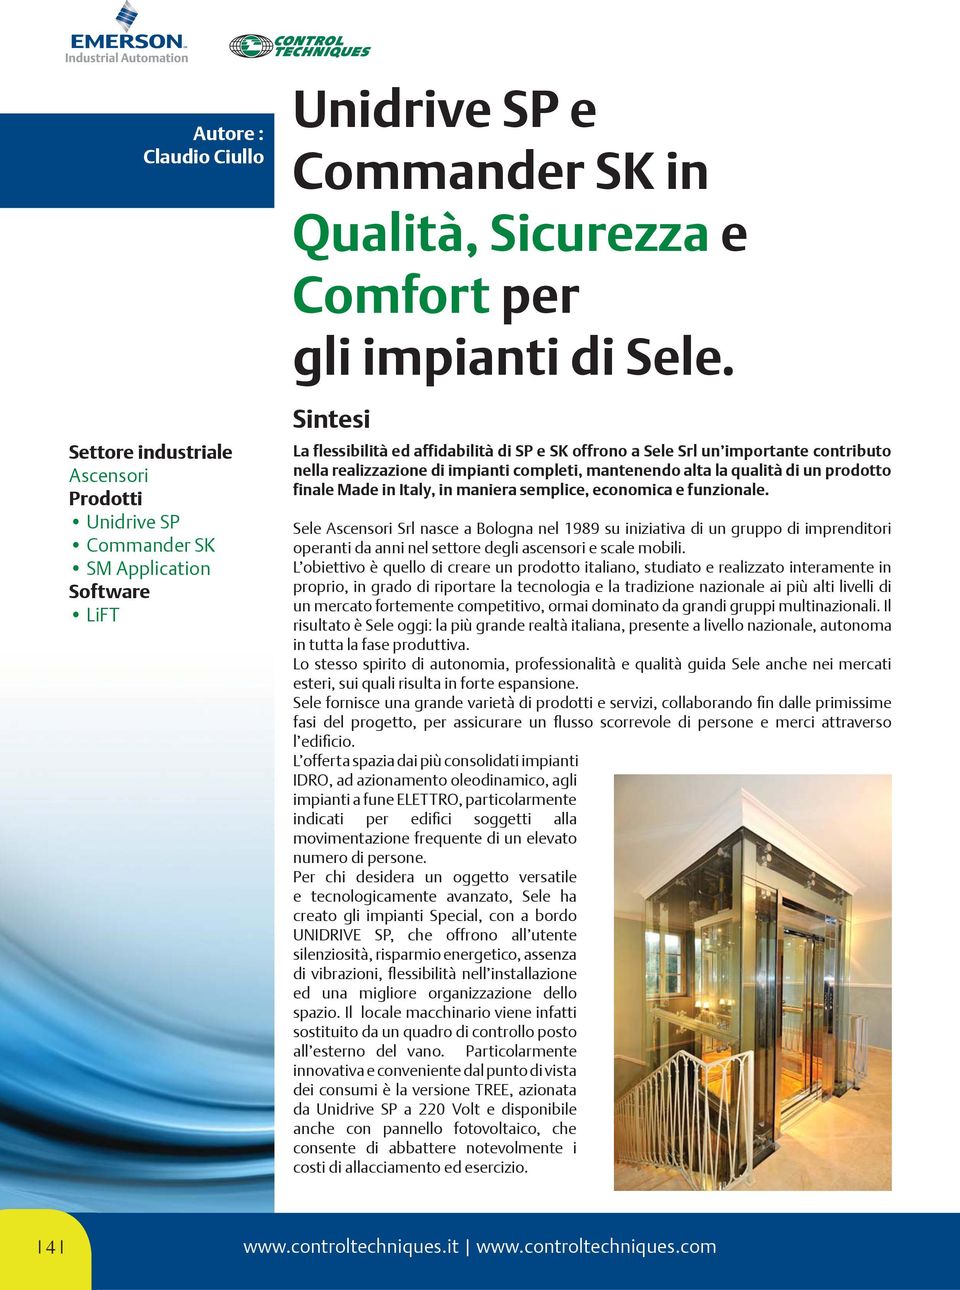 Italy, in maniera semplice, economica e funzionale. Sele Ascensori Srl nasce a Bologna nel 1989 su iniziativa di un gruppo di imprenditori operanti da anni nel settore degli ascensori e scale mobili.